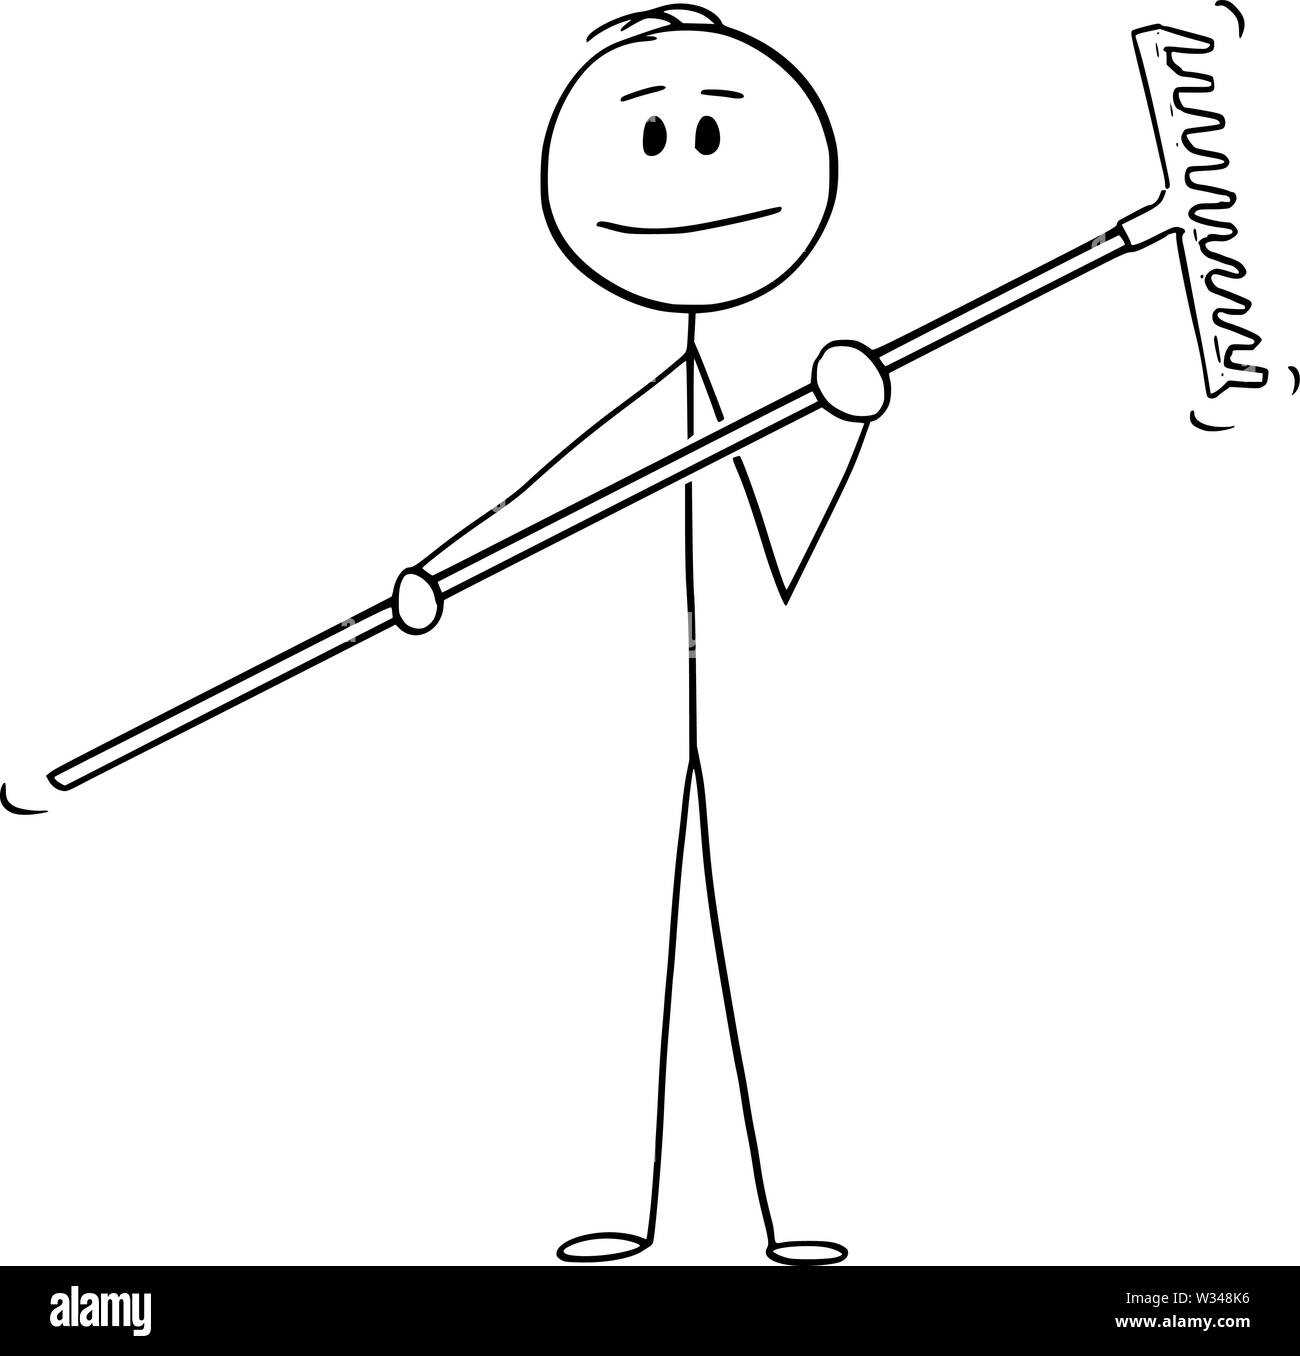 Vector cartoon stick figure dessin illustration conceptuelle de l'homme ou de l'agriculteur ou jardinier holding rake. Illustration de Vecteur